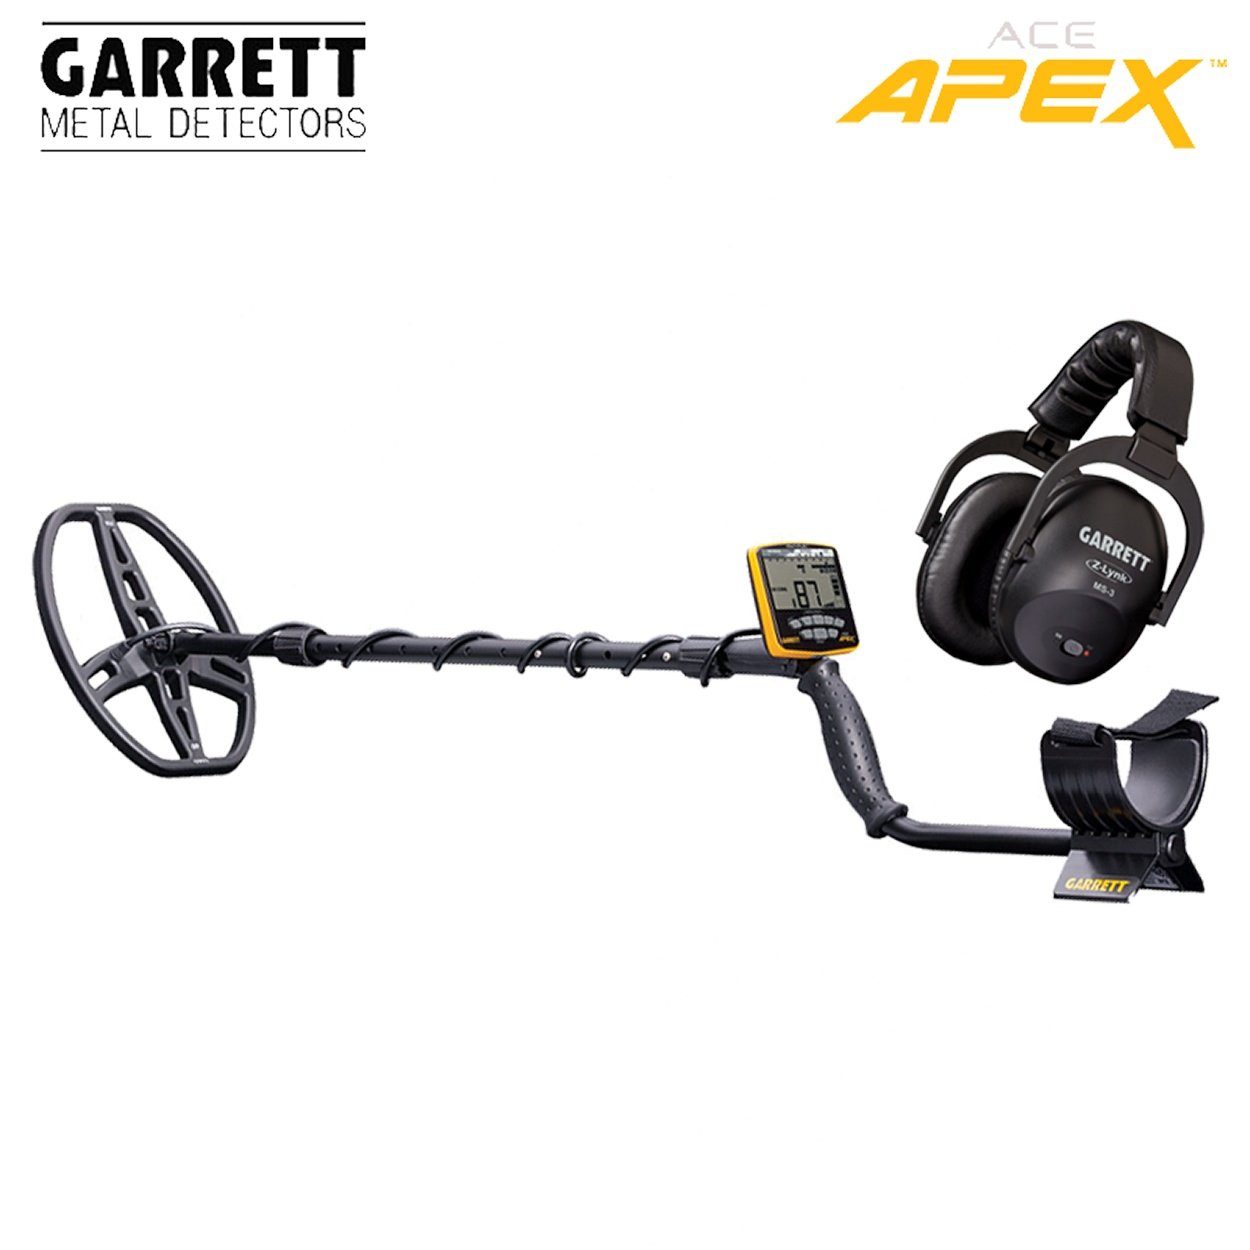 Metalldetektor APEX Garrett Ace Metalldetektor (Wireless Raider Pack) Garrett